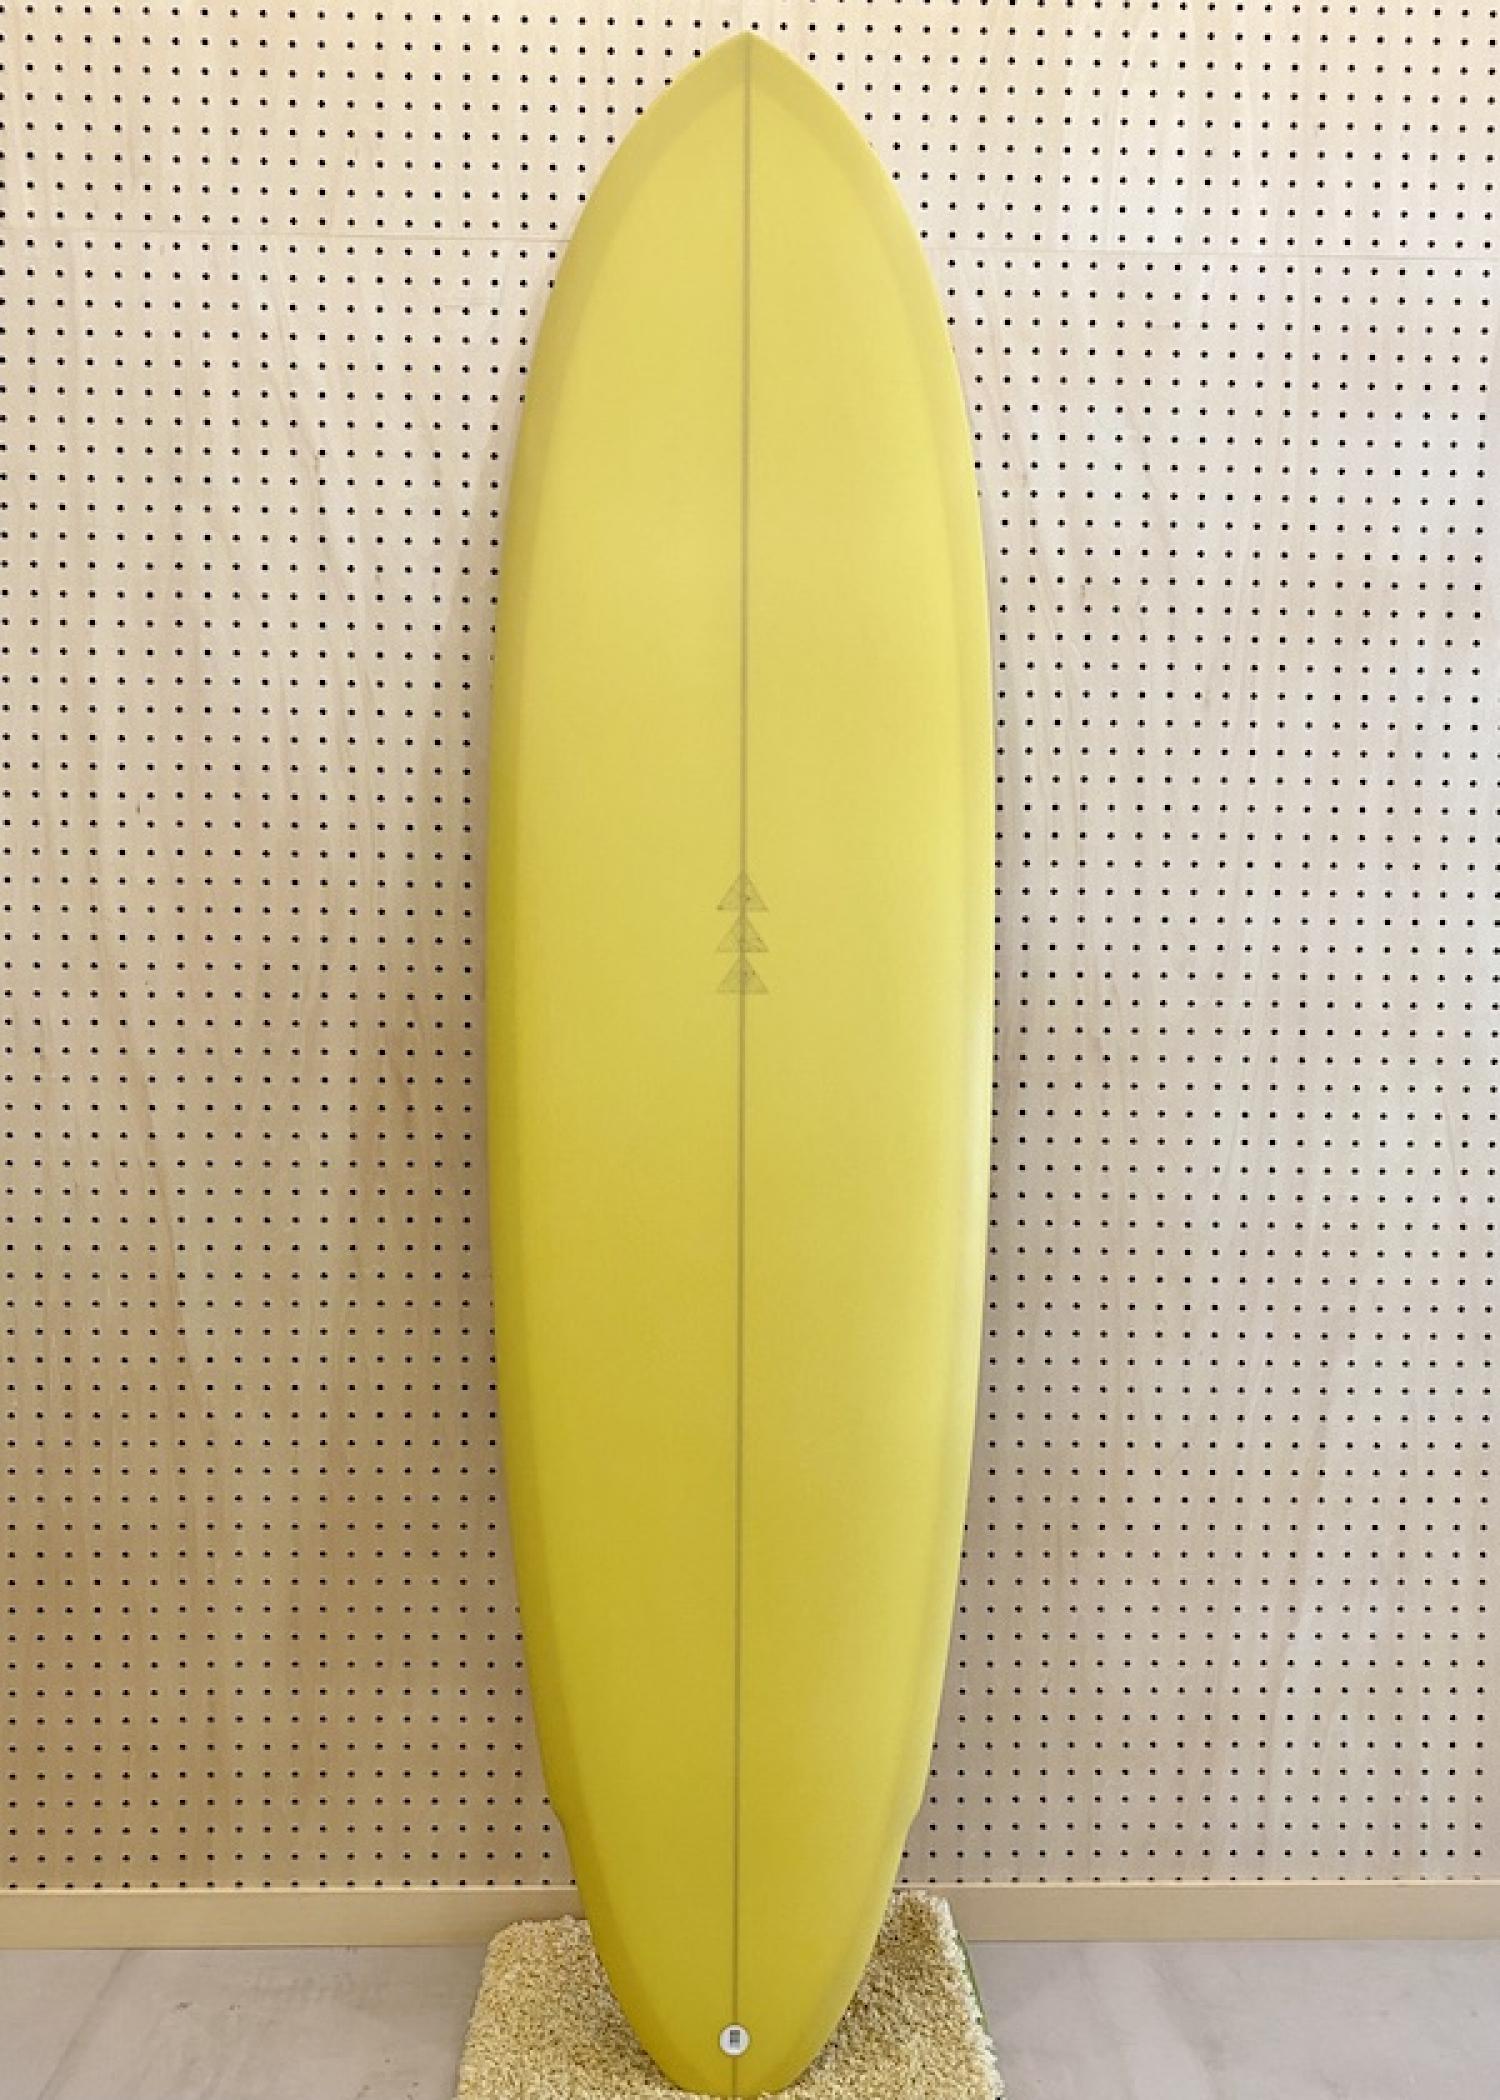 FLOYD PEPPER2.0 6.8 FURROW SURF CRAFT